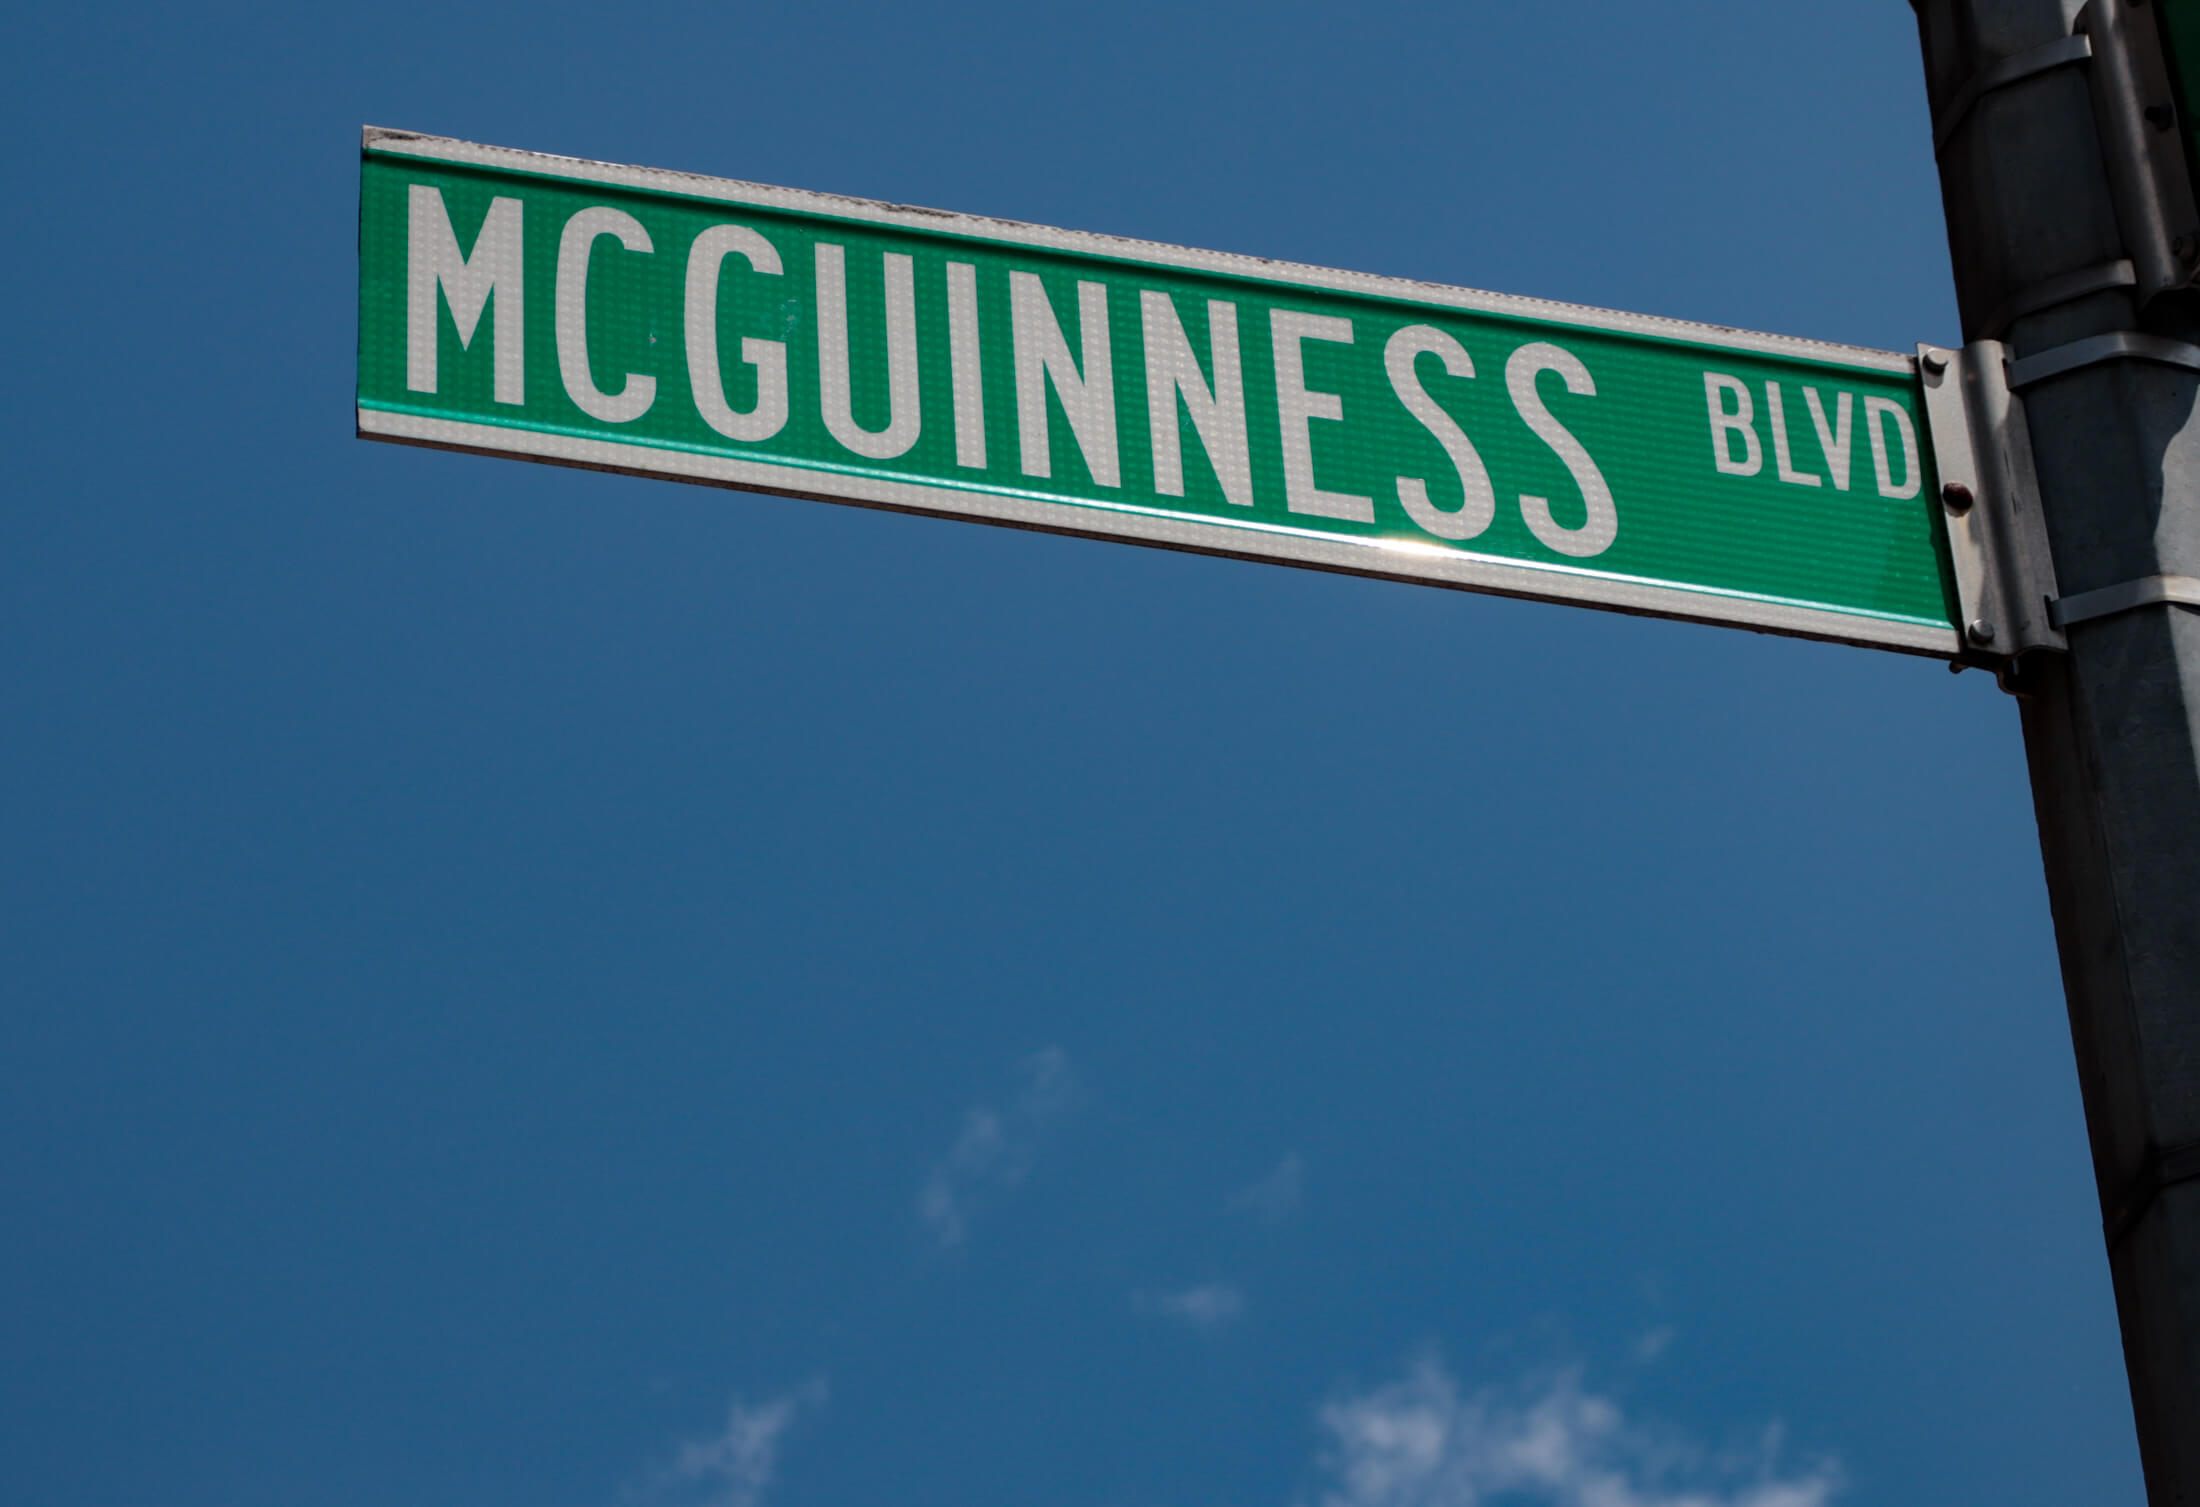 mcguinness boulevard street sign against a blue sky